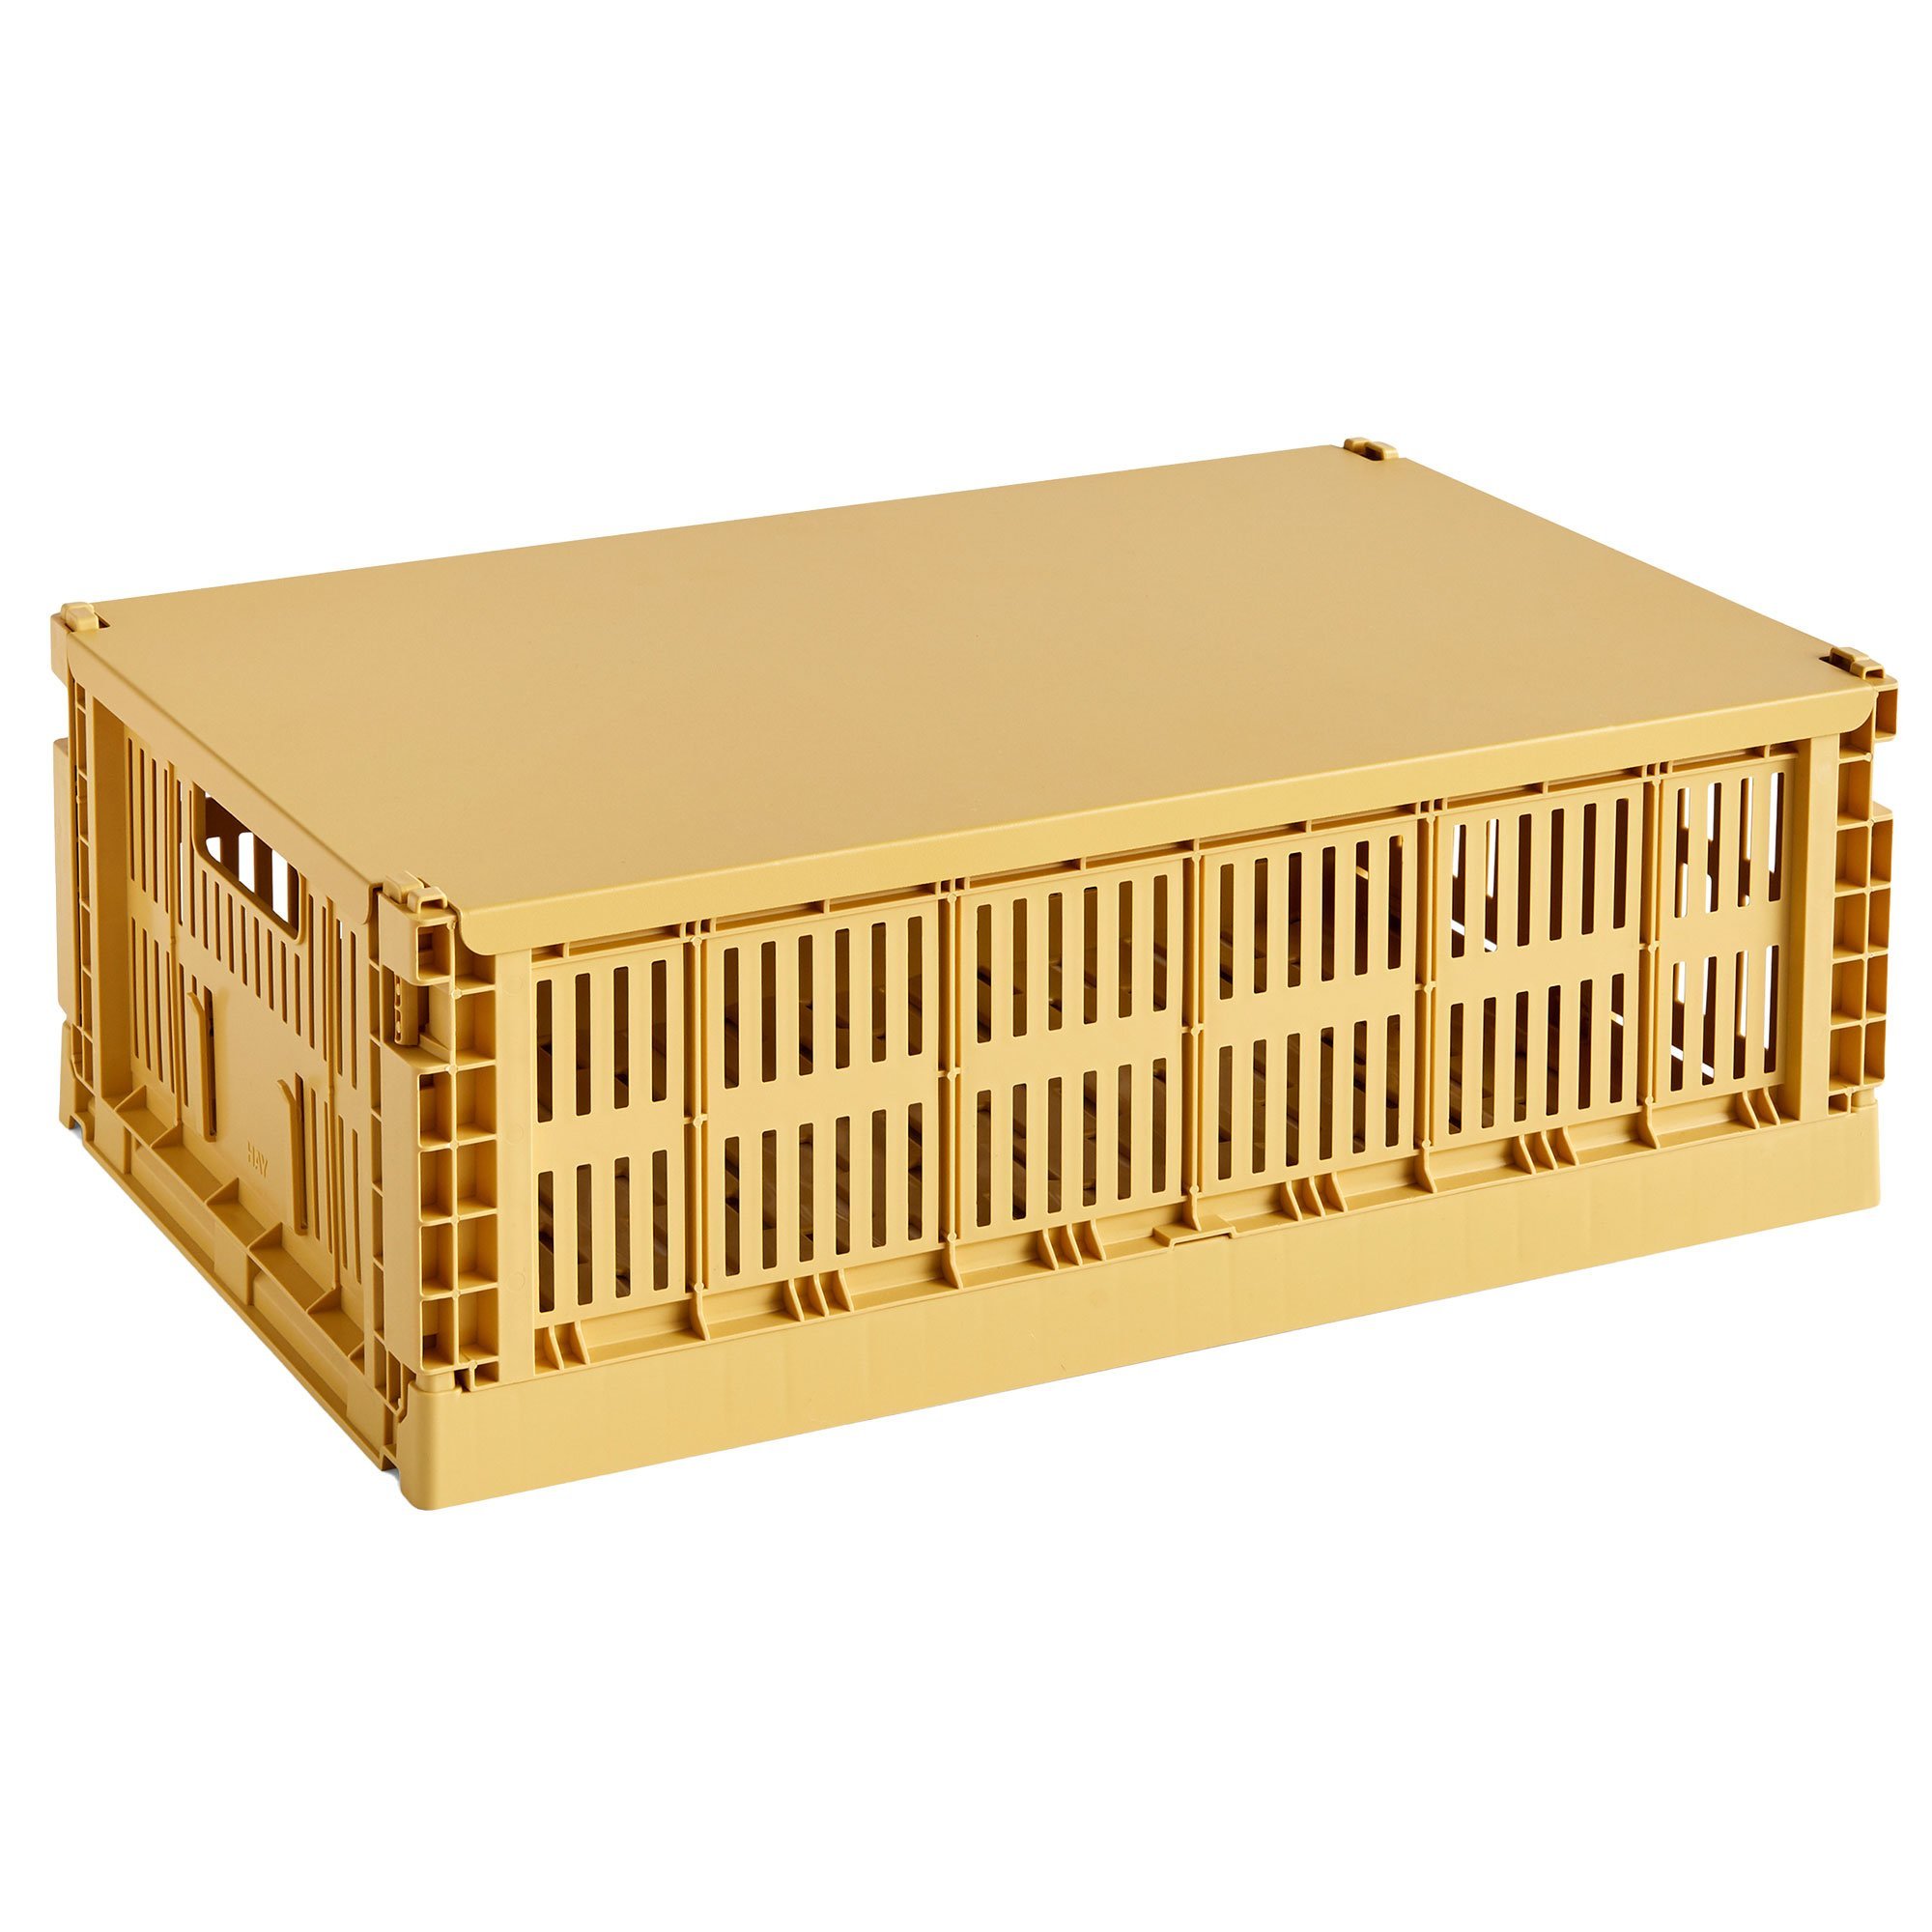 Bilde av Hay Colour Crate Lokk Large, Golden Yellow